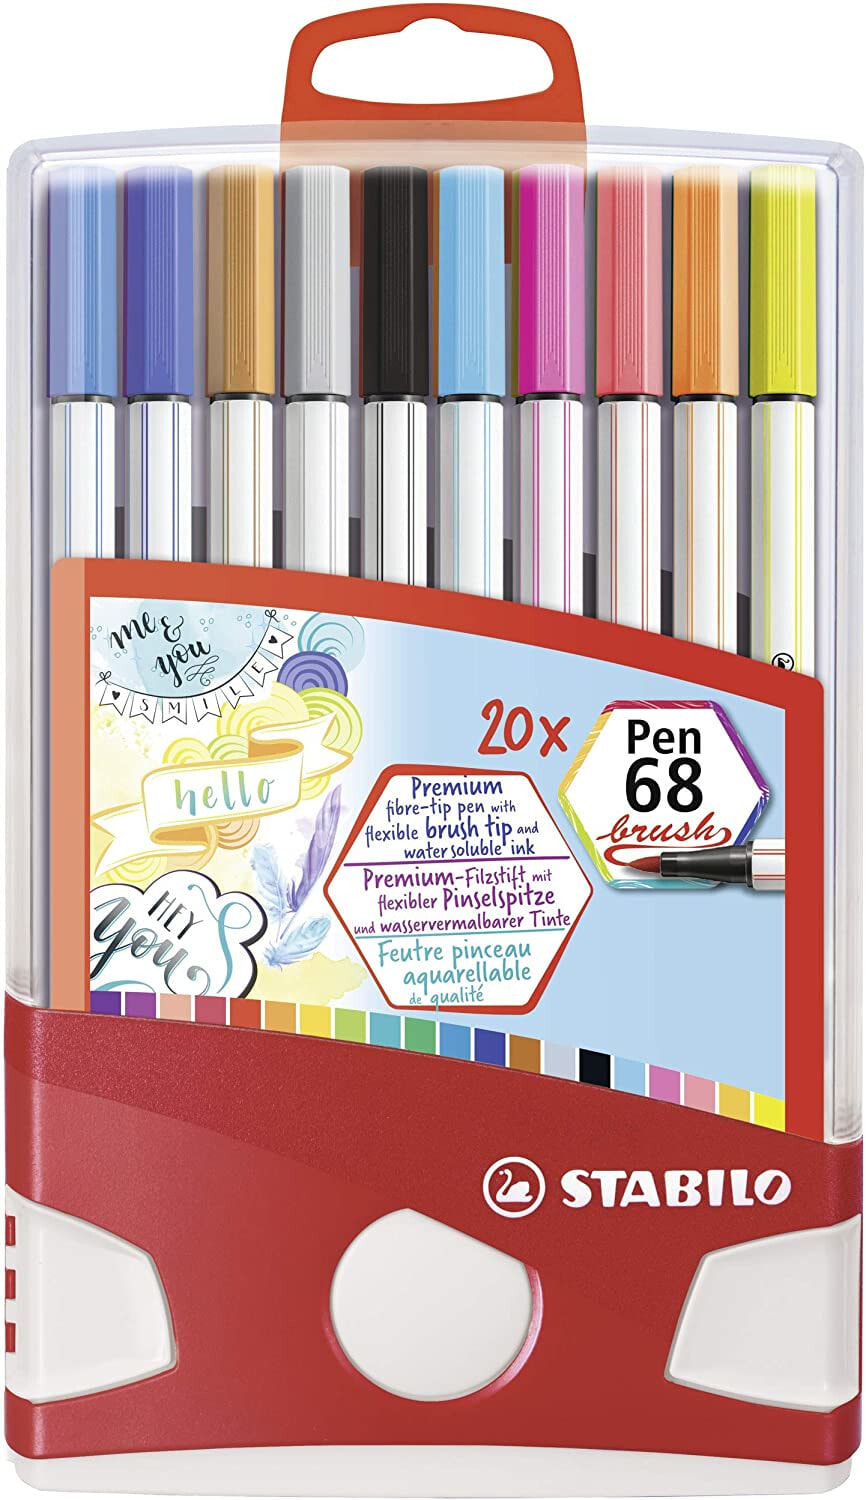 STABILO Pen 68 brush фломастер Разноцветный 20 шт 568/20-0211